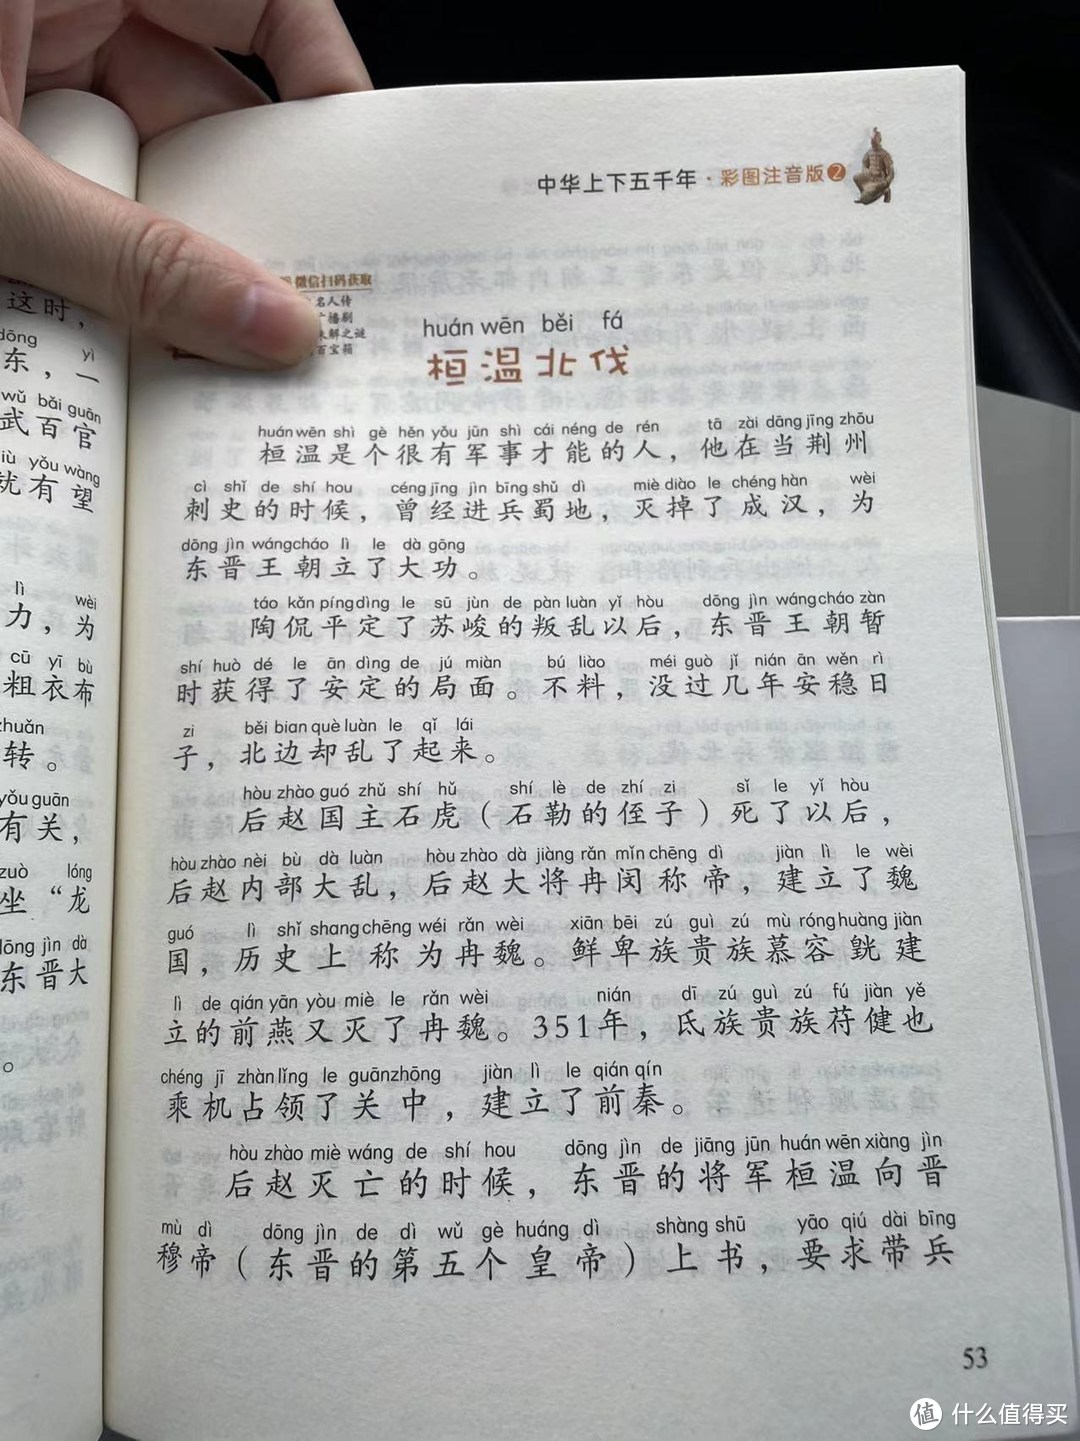 陪娃一起读上下五千年之桓温北伐